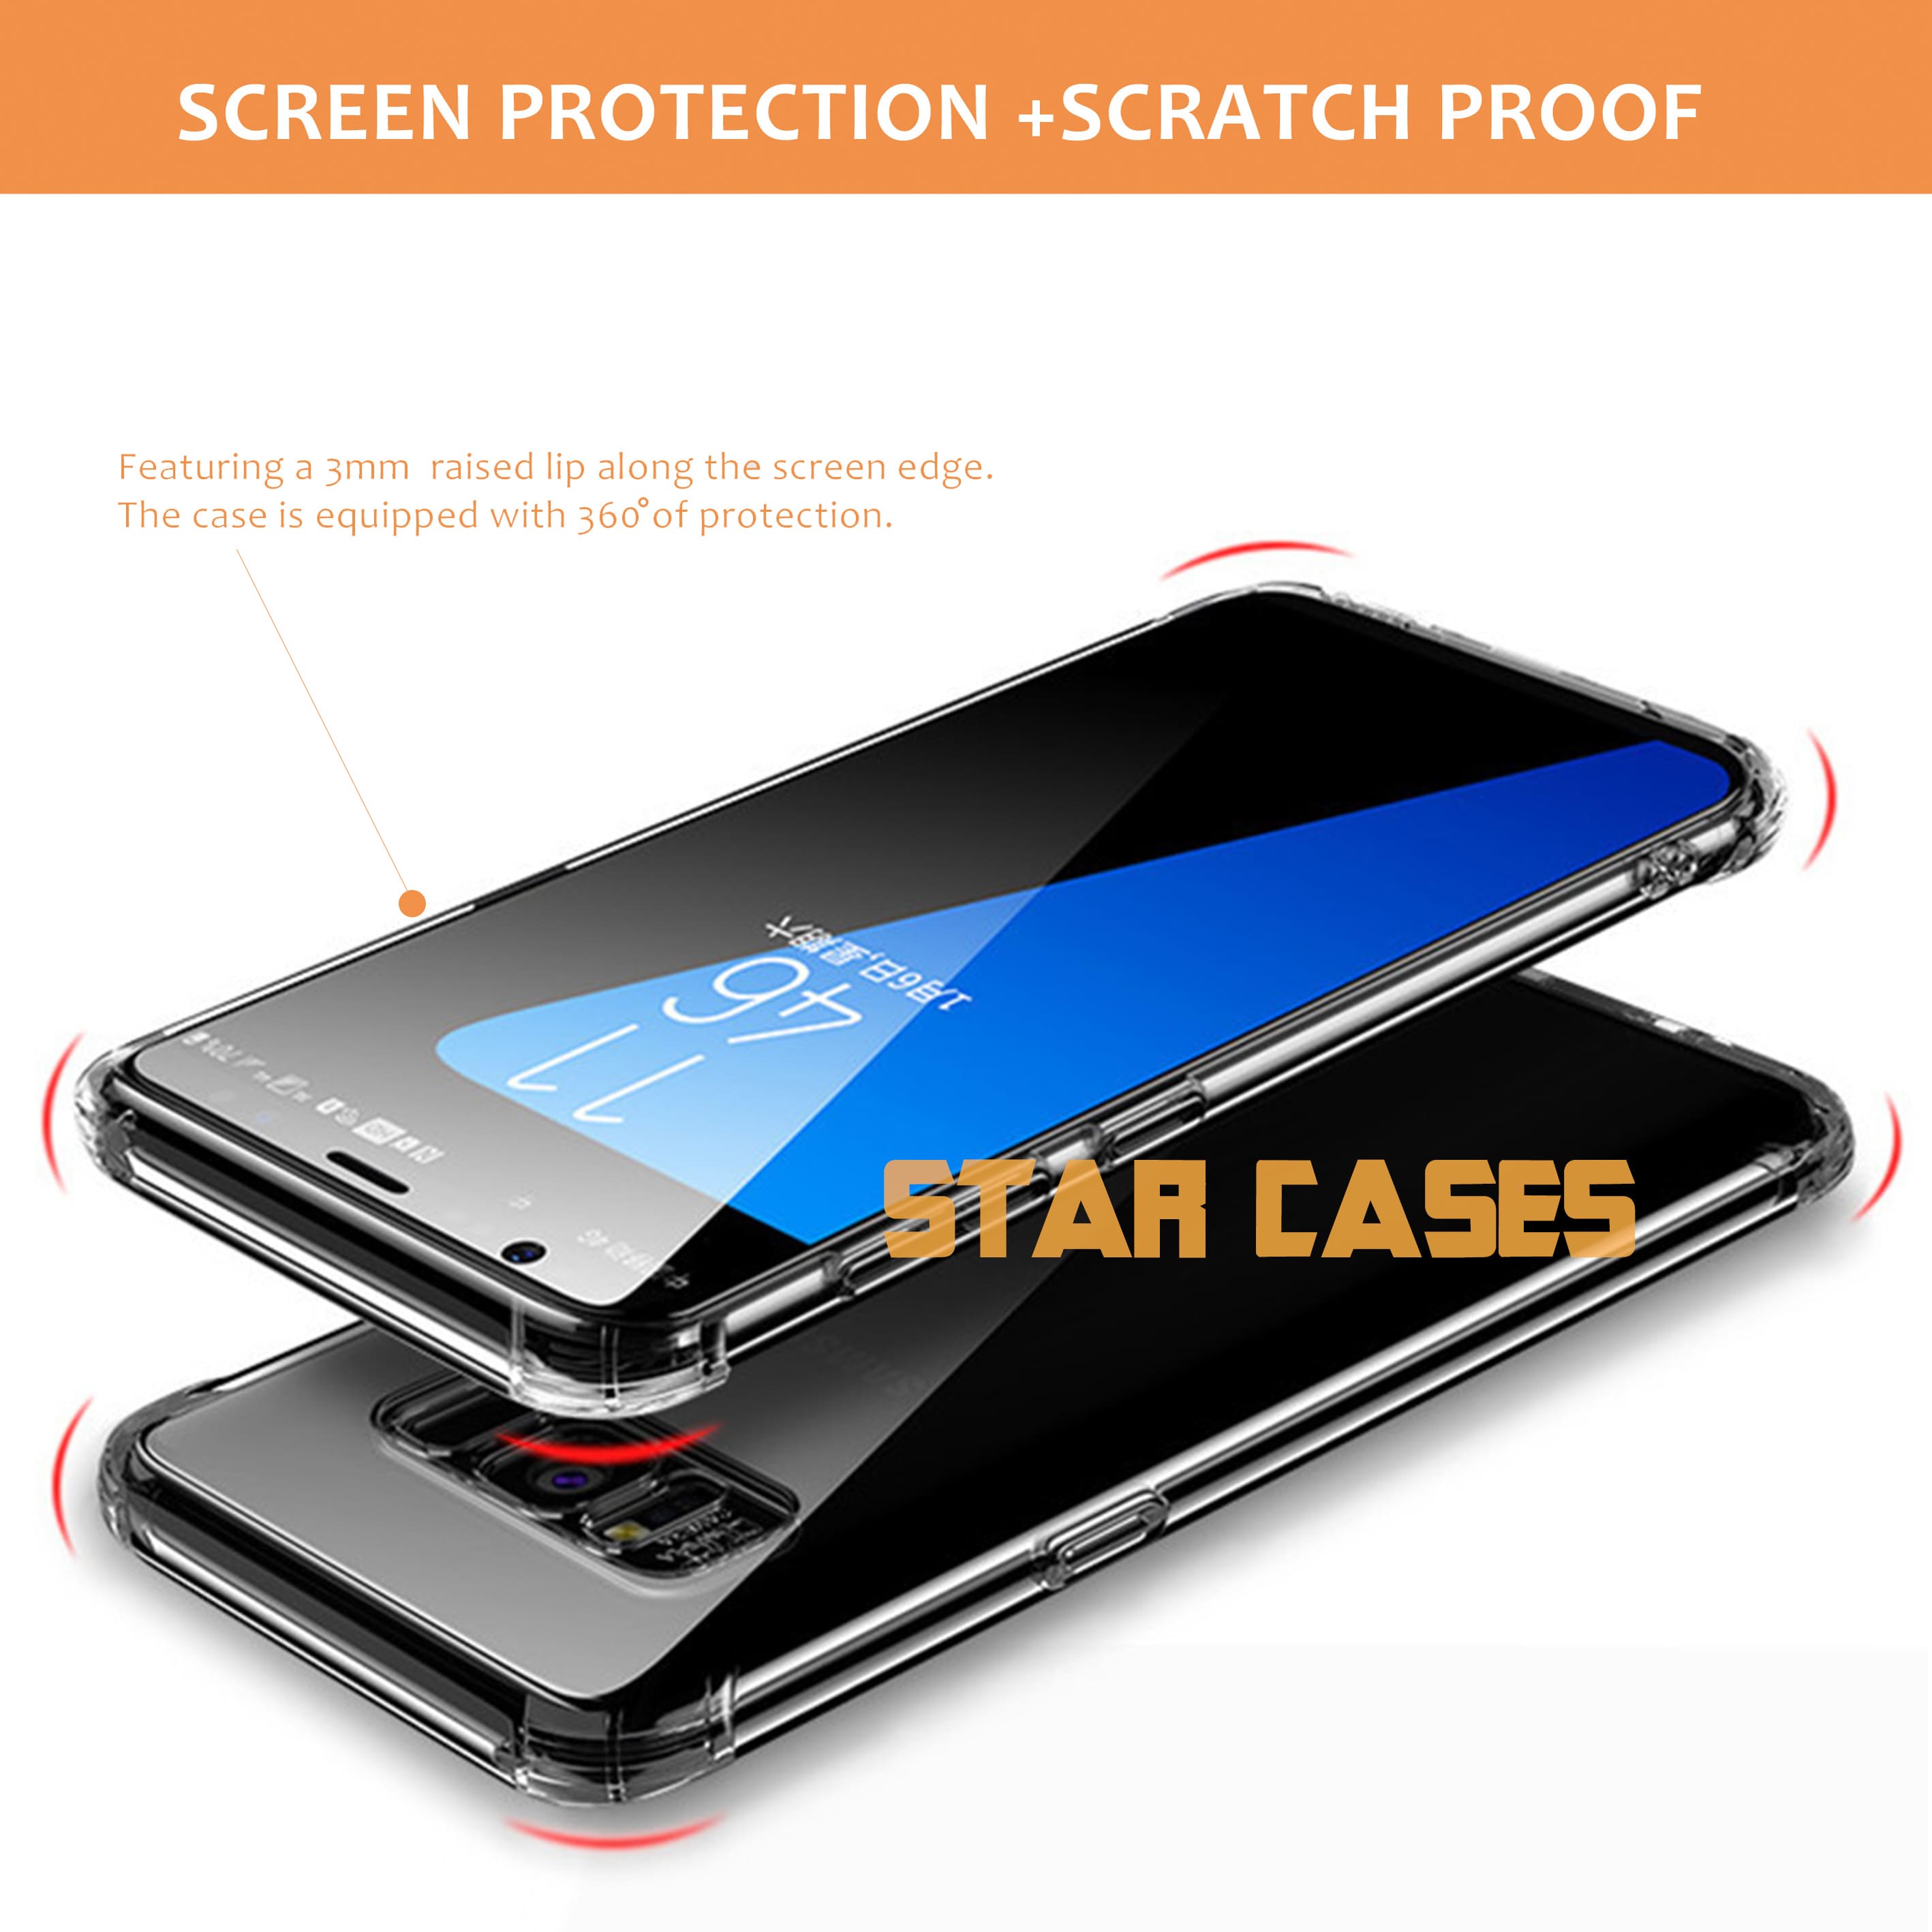 Samsung S10 Plus Clear Soft Bumper Case